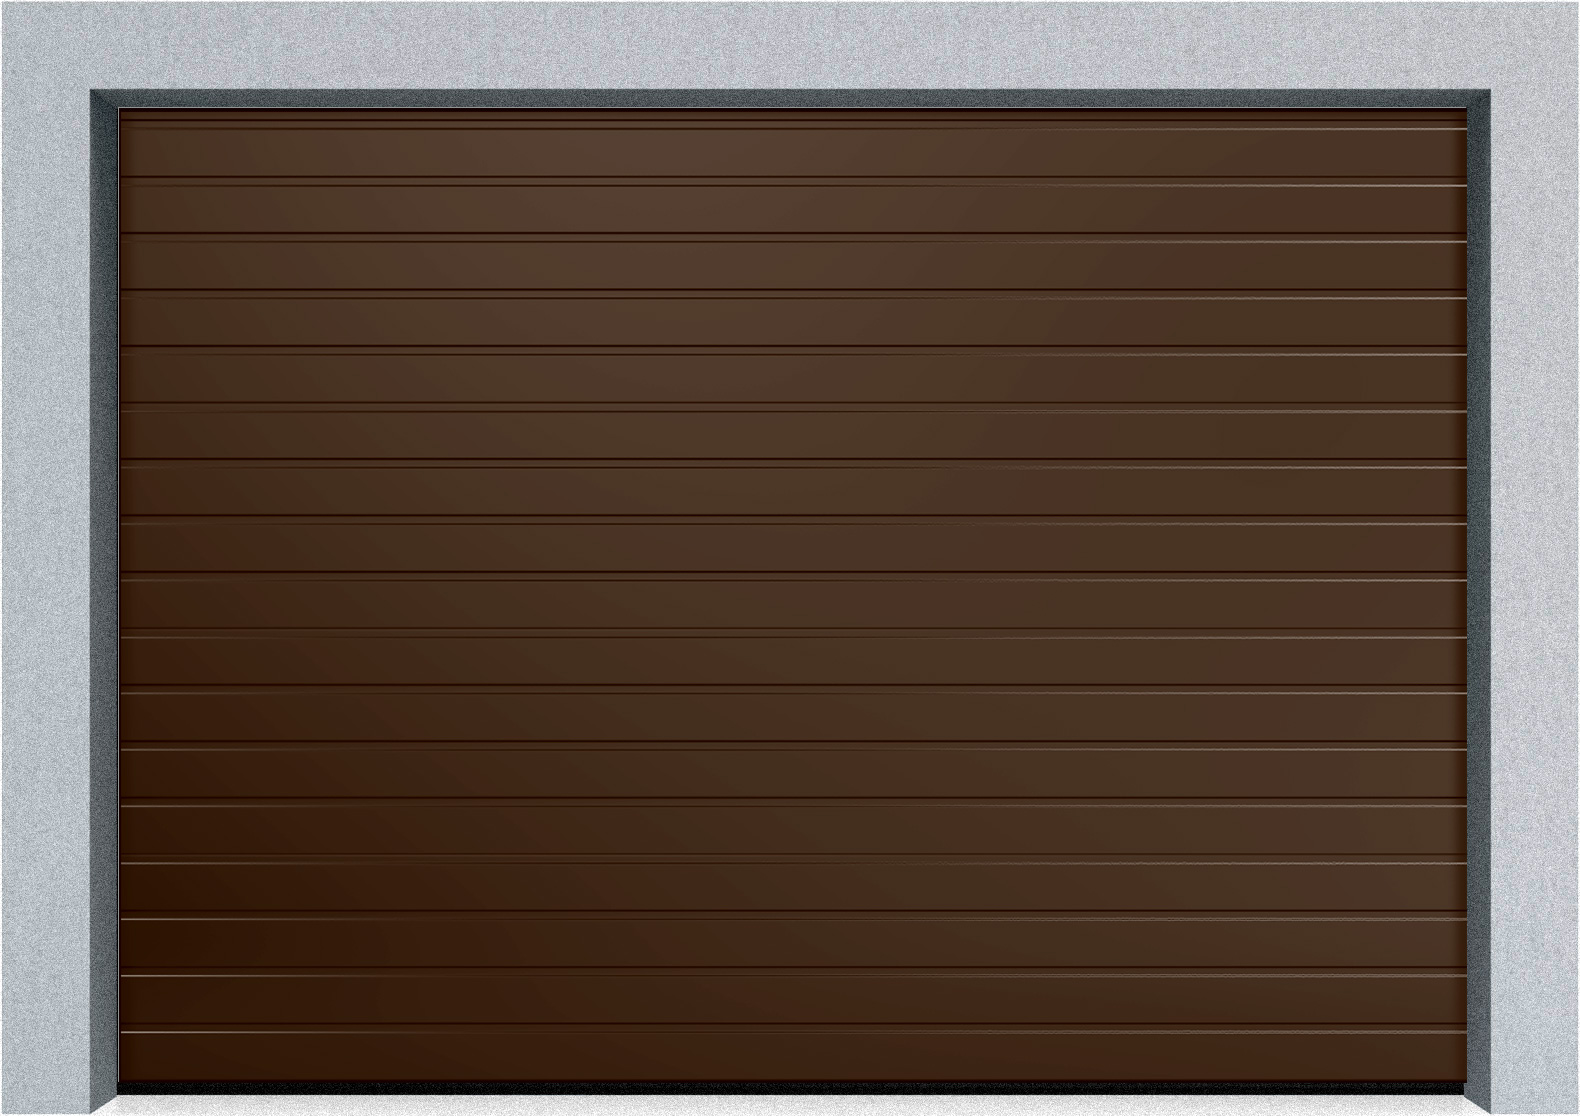  Автоматические секционные гаражные ворота DoorHan RSD02 4500х1800 S-гофр, M-гофр, Микроволна стандартные цвета, фото 2 